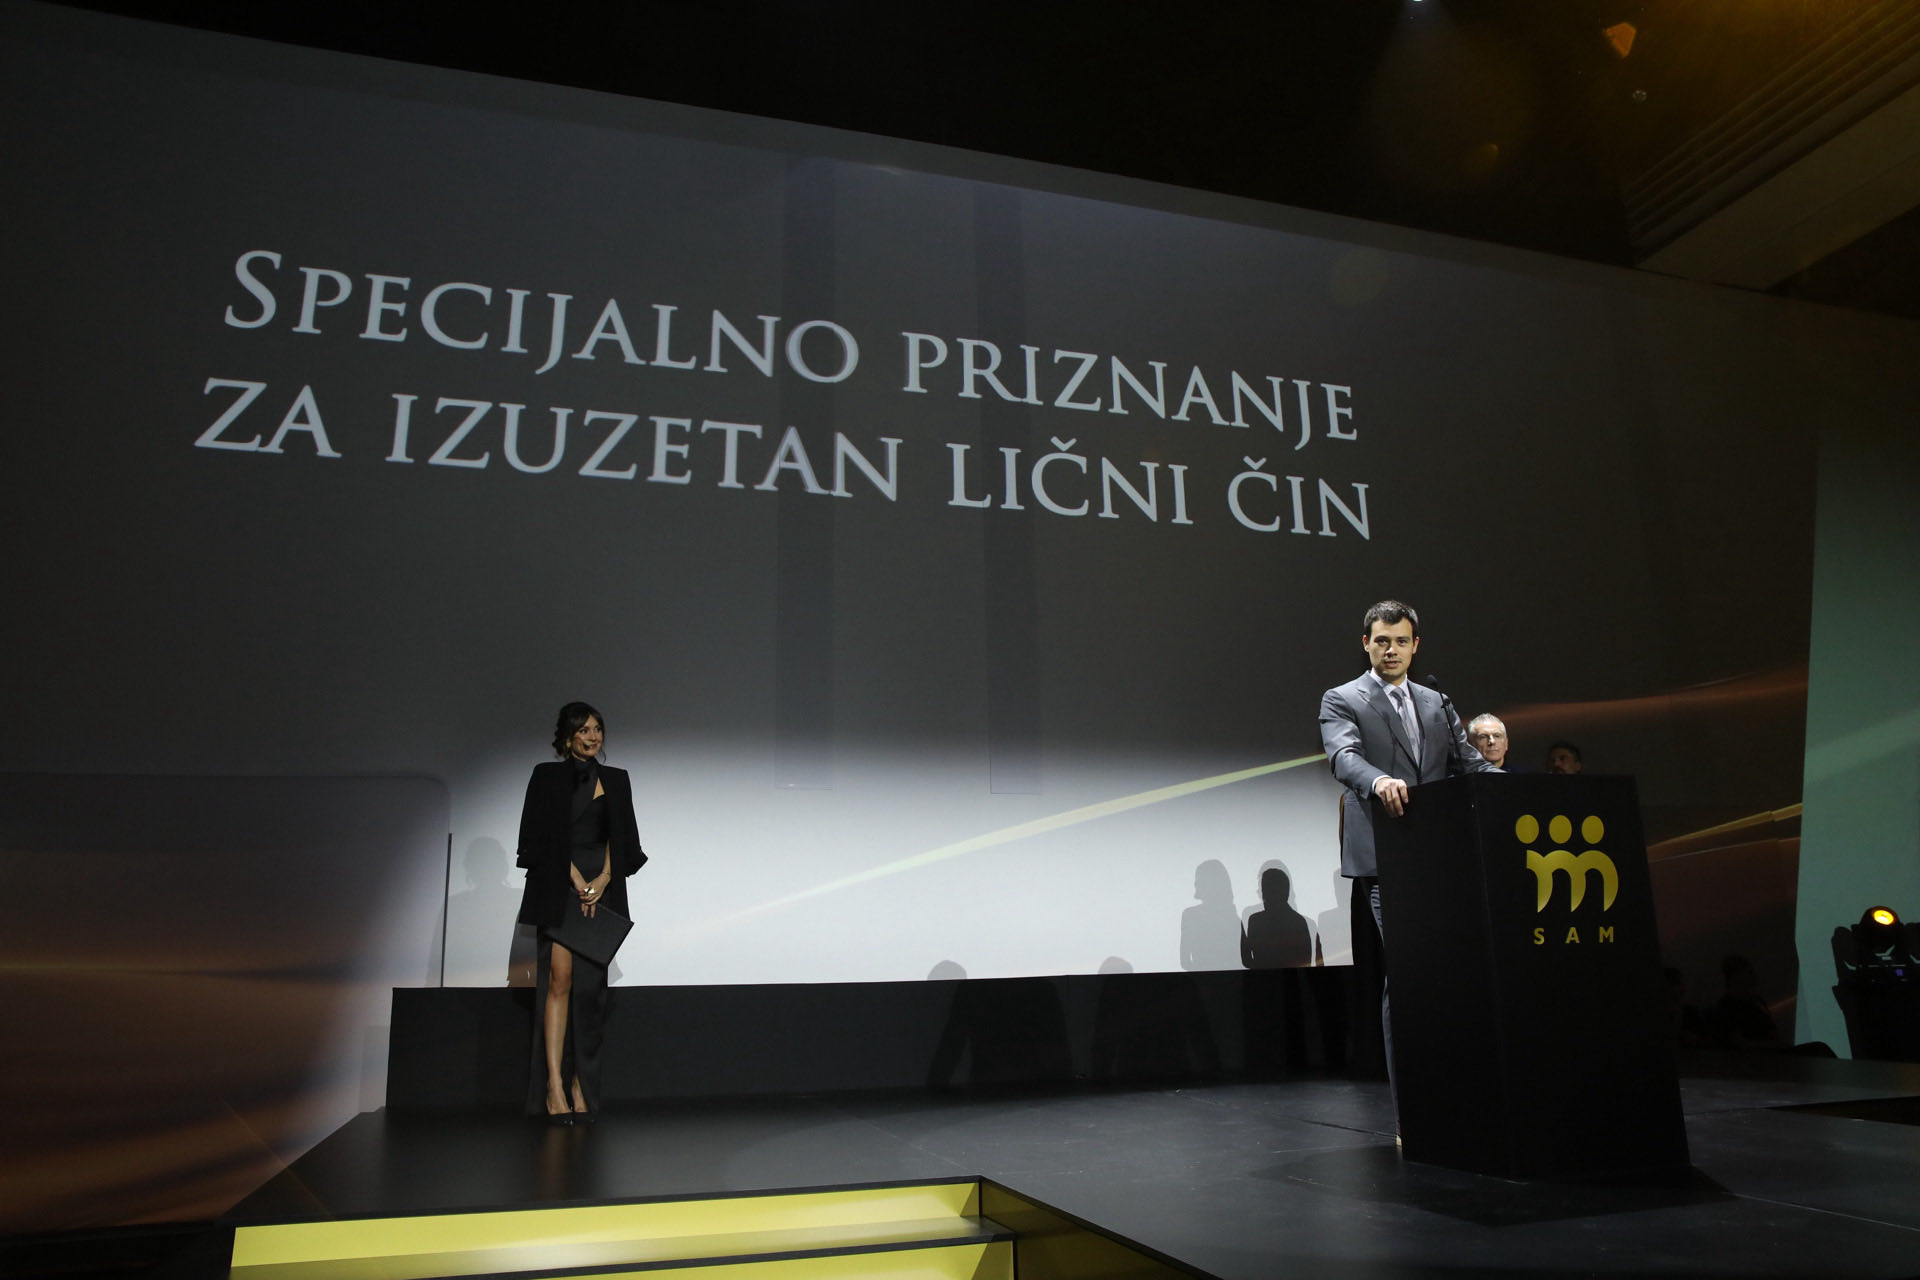 Aleksandar Kostić prima specijalnu nagradu za izuzetan lični čin koja je dodeljena Miodragu Kostiću za osnivanje Palate nauke